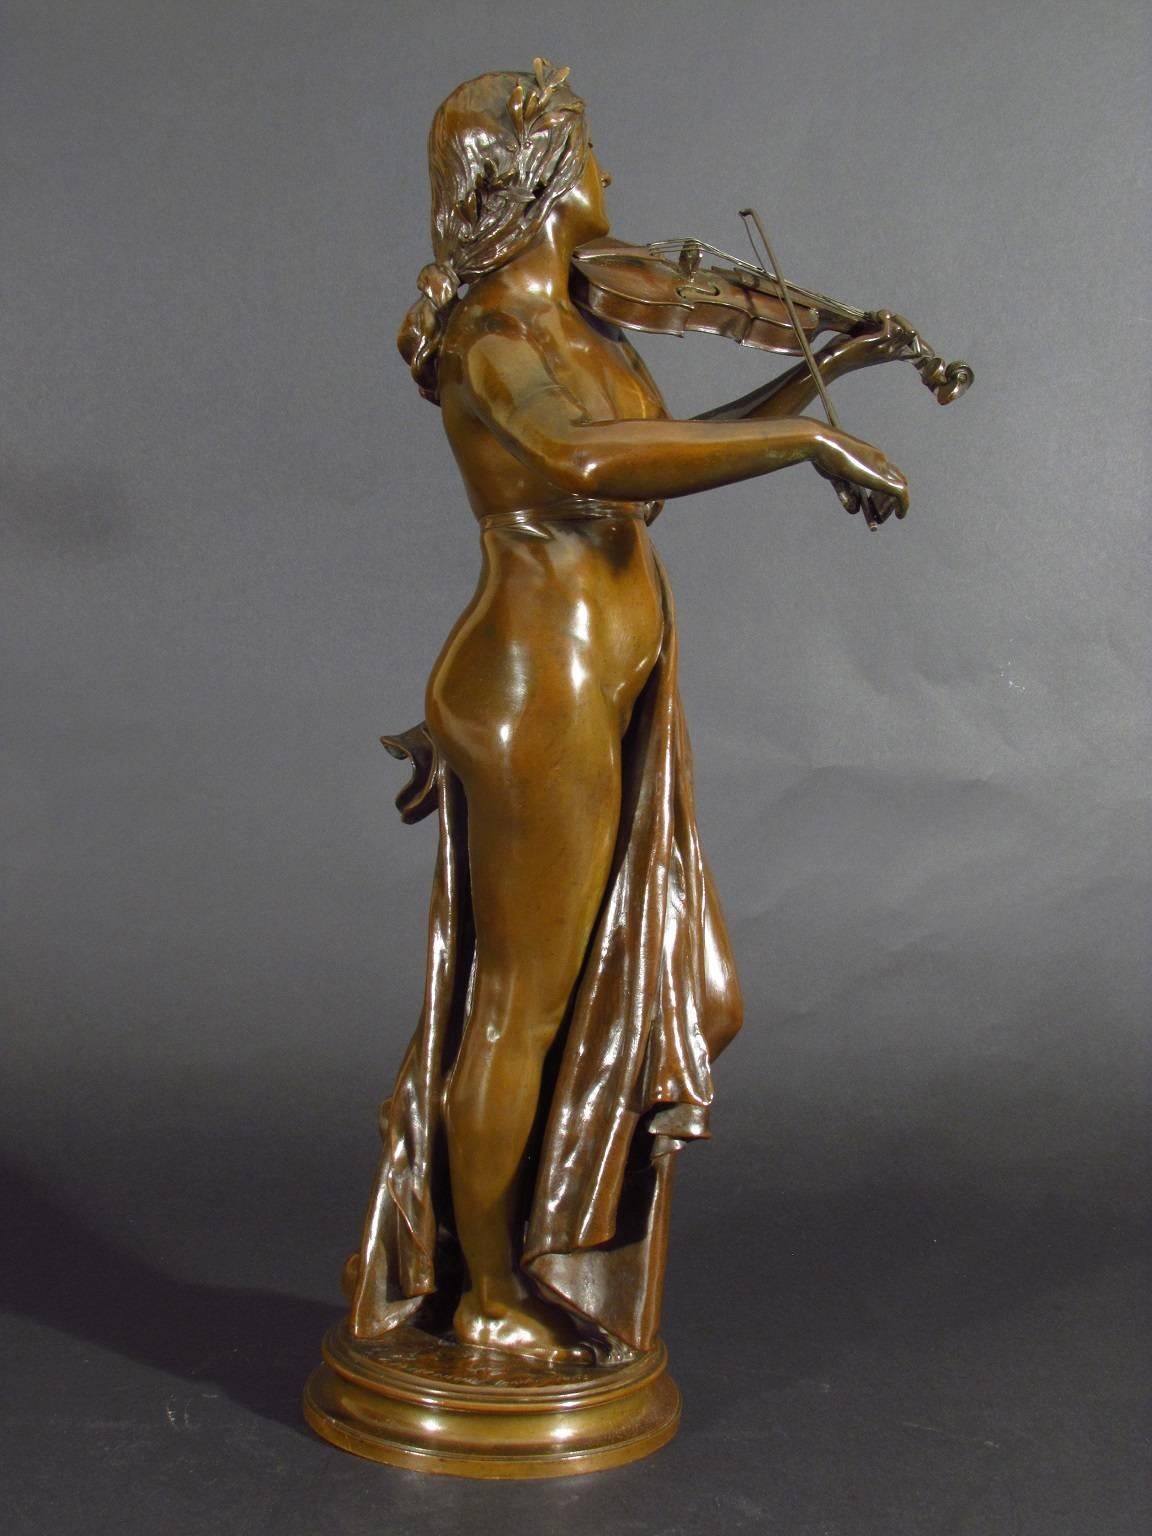 La Musique - Romantic Sculpture by Eugène Delaplanche